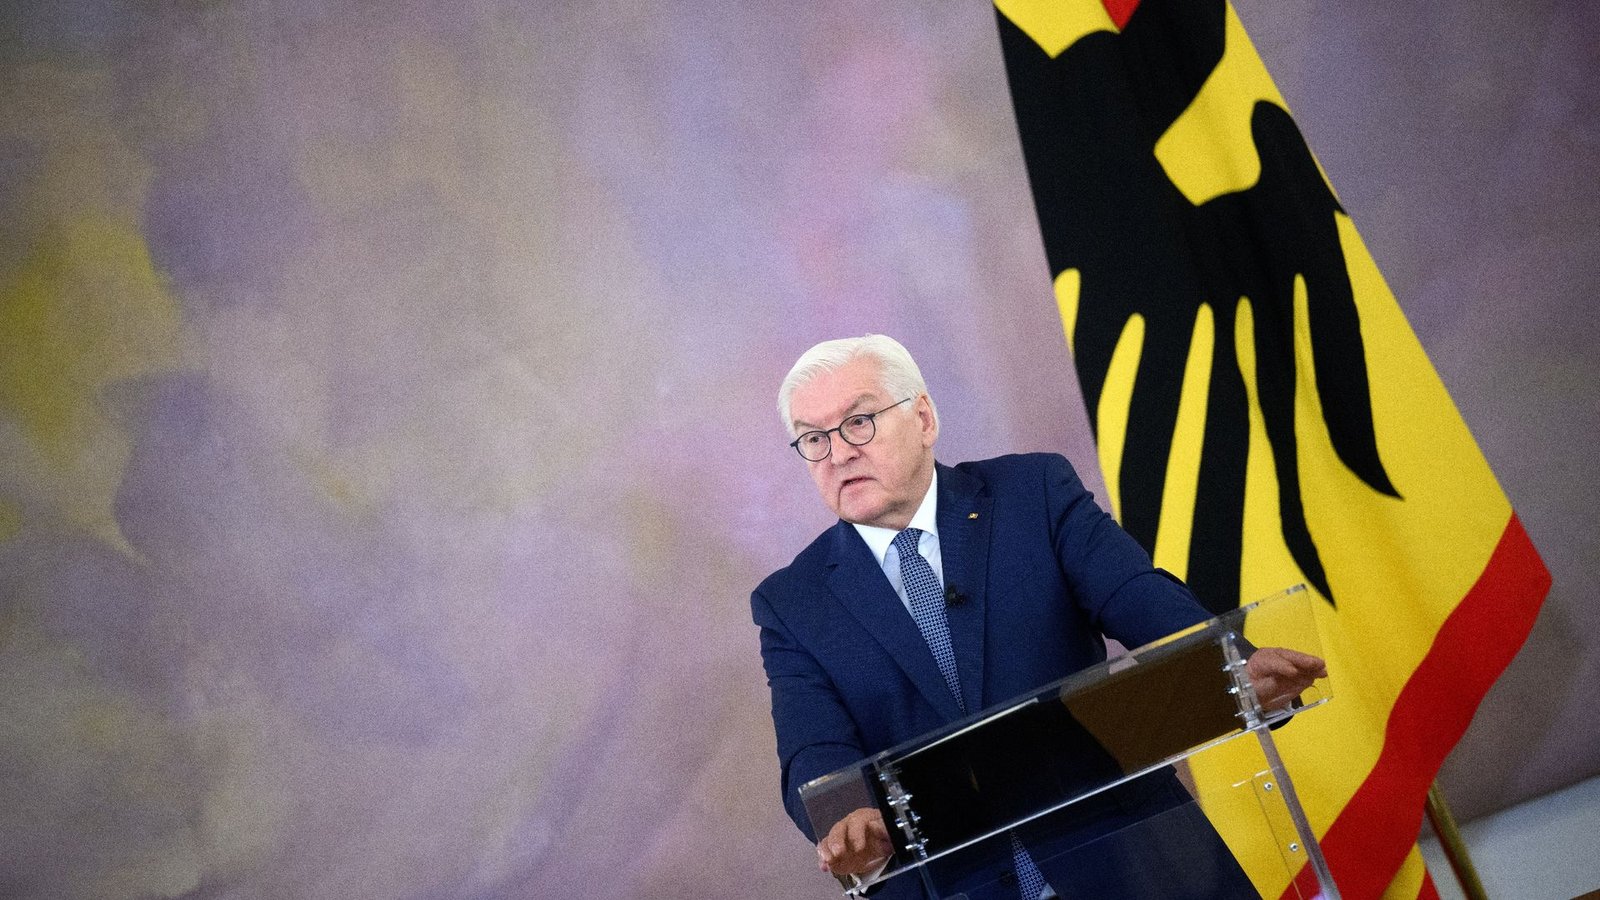 Nach Kritik an der Besetzung der für den 2. Mai geplanten Diskussionsrunde, hat Bundespräsident Frank-Walter Steinmeier die Veranstaltung abgesagt.Foto: Bernd von Jutrczenka/dpa